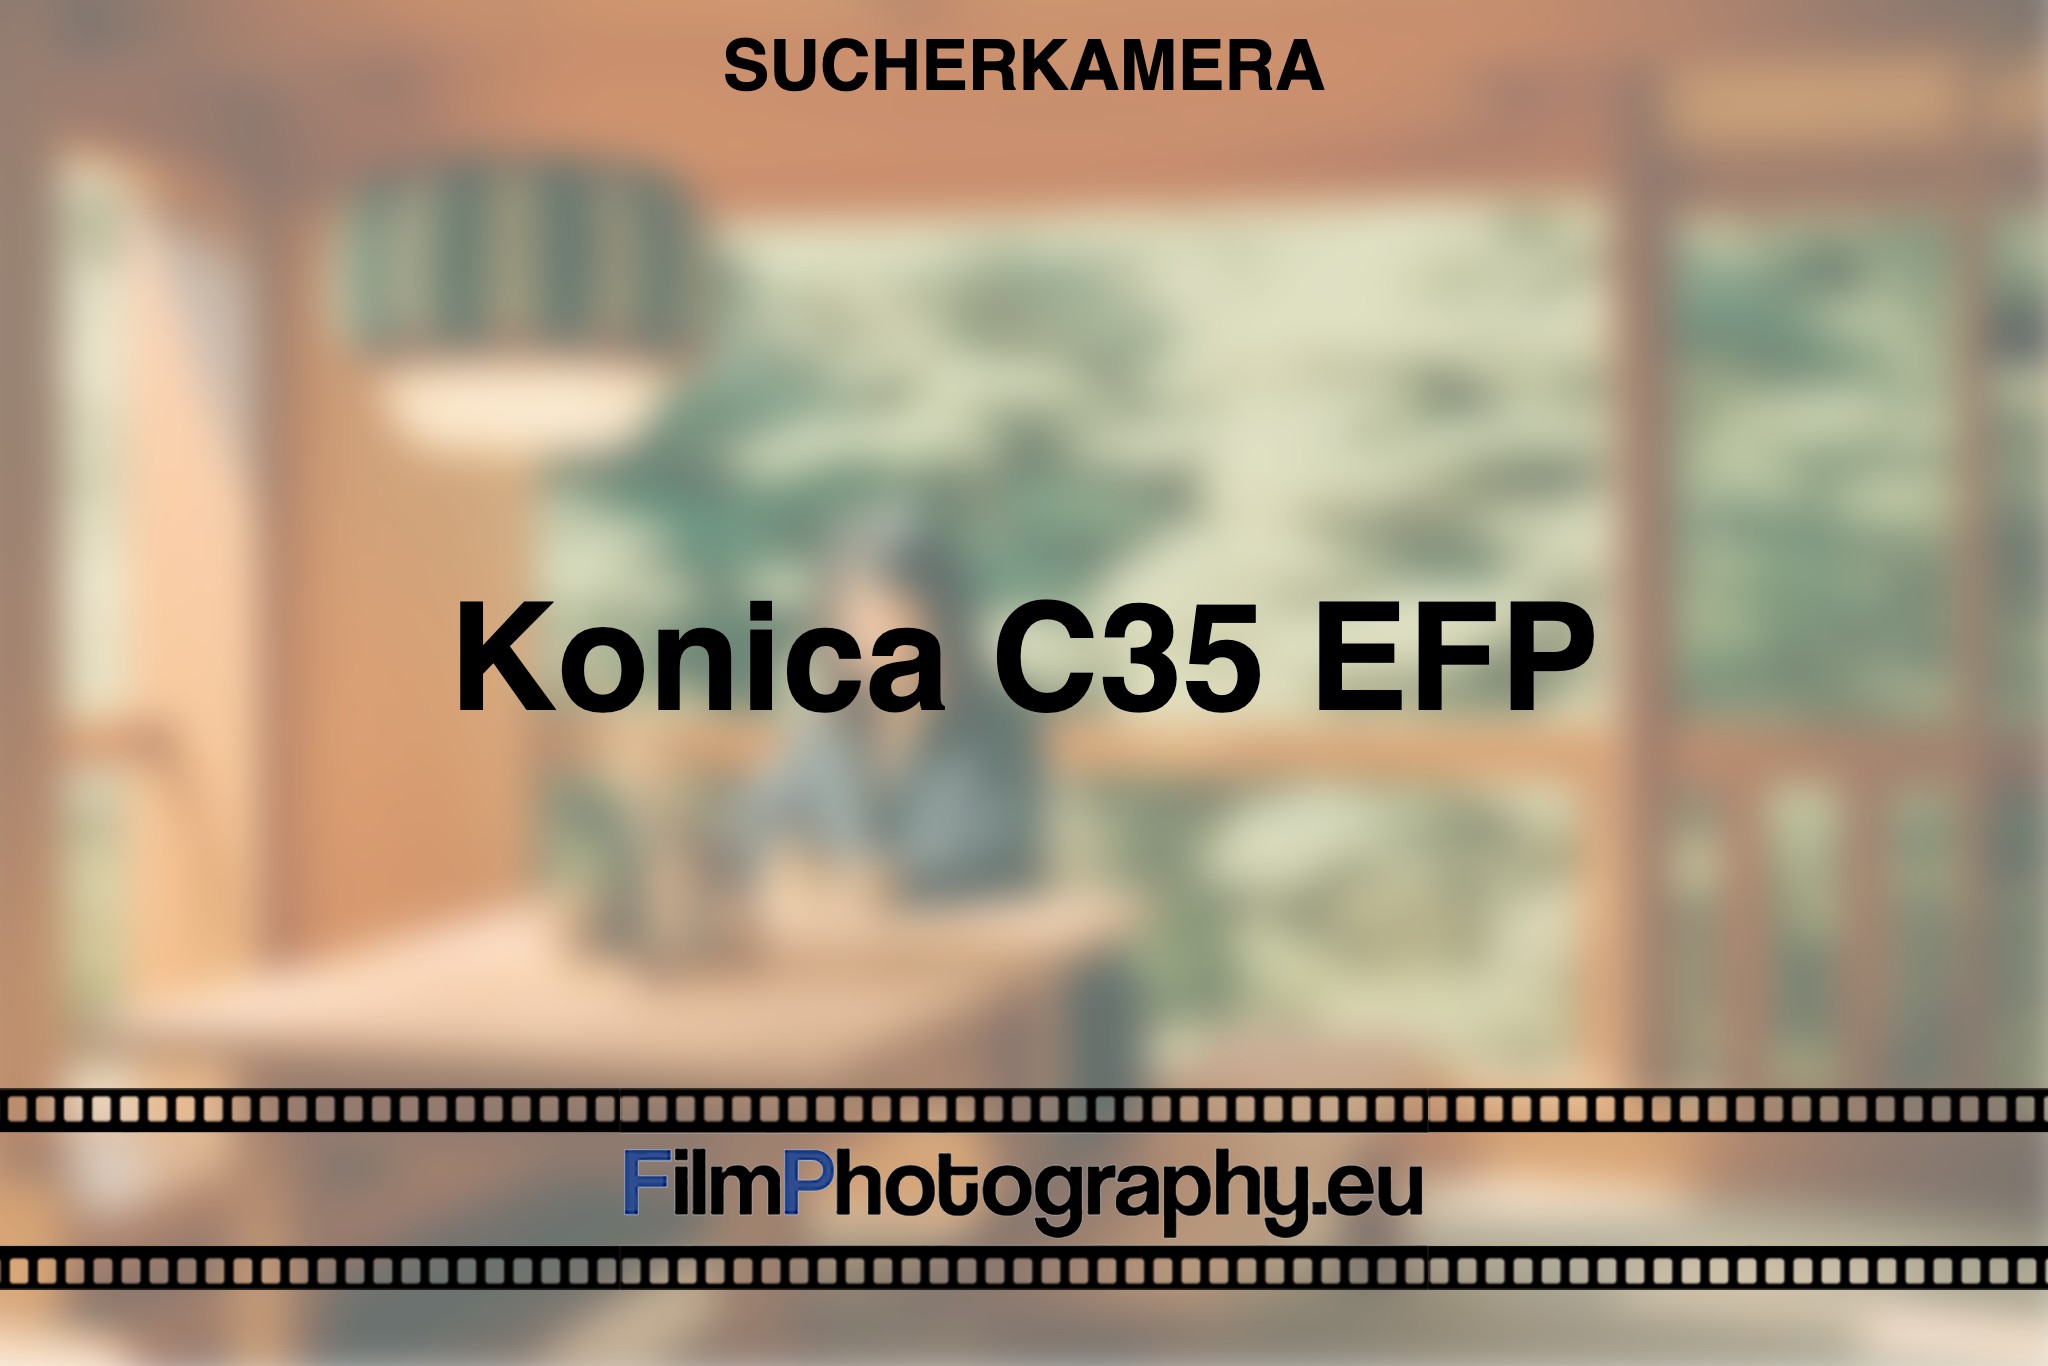 konica-c35-efp-sucherkamera-bnv